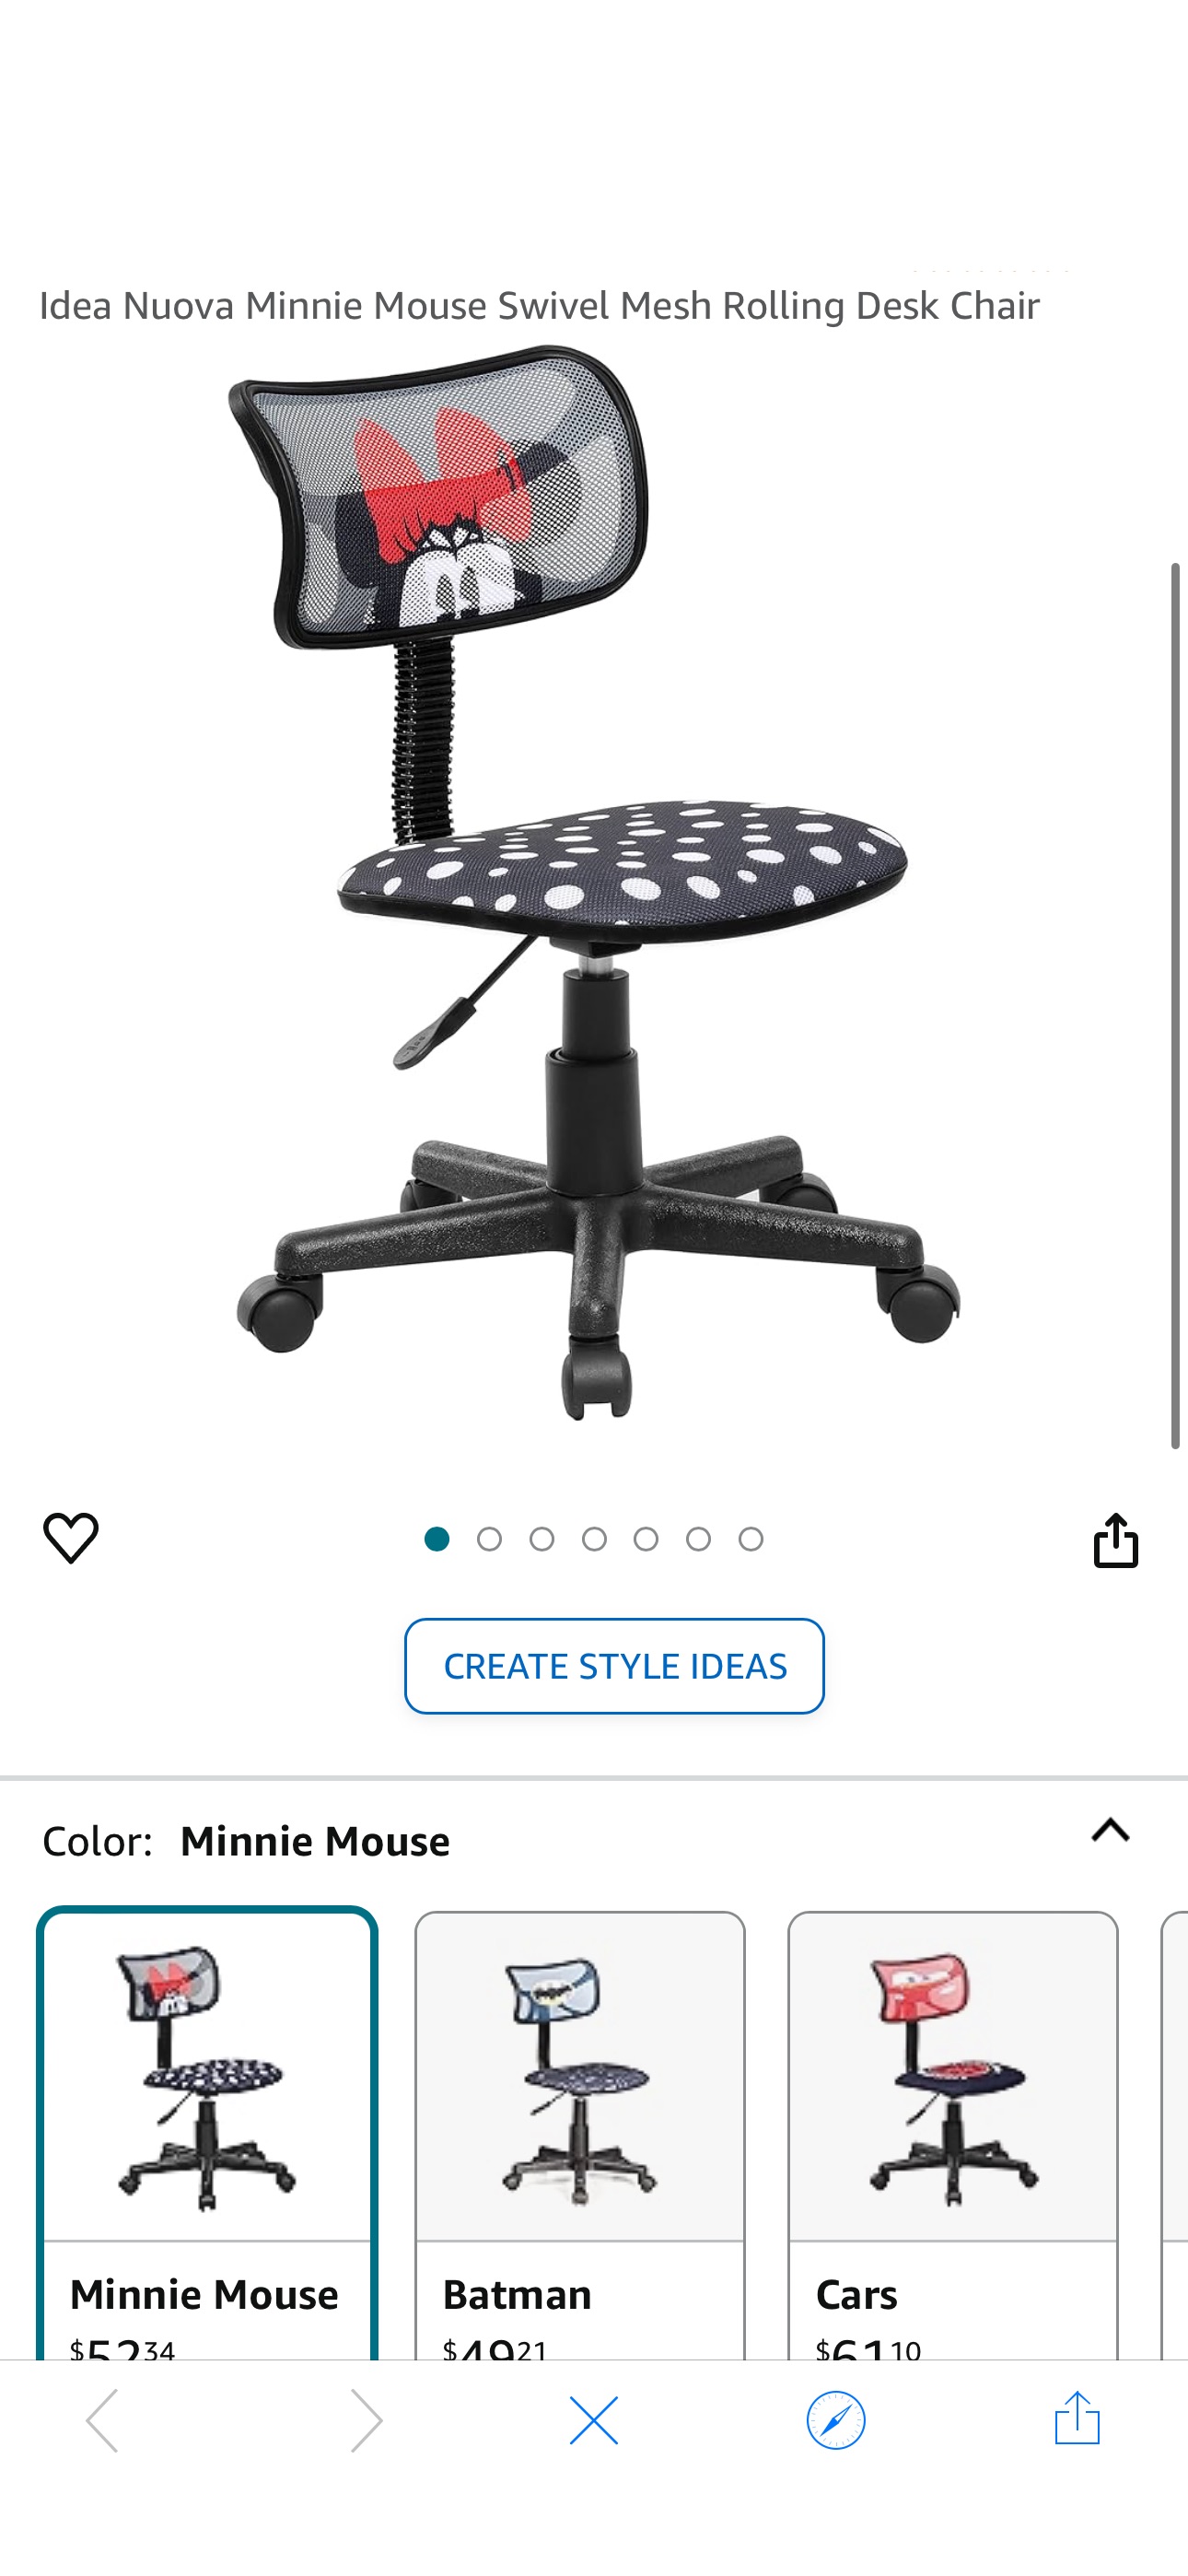 Amazon.com: Idea Nuova Minnie Mouse Swivel Mesh Rolling Desk Chair : Home & Kitchen